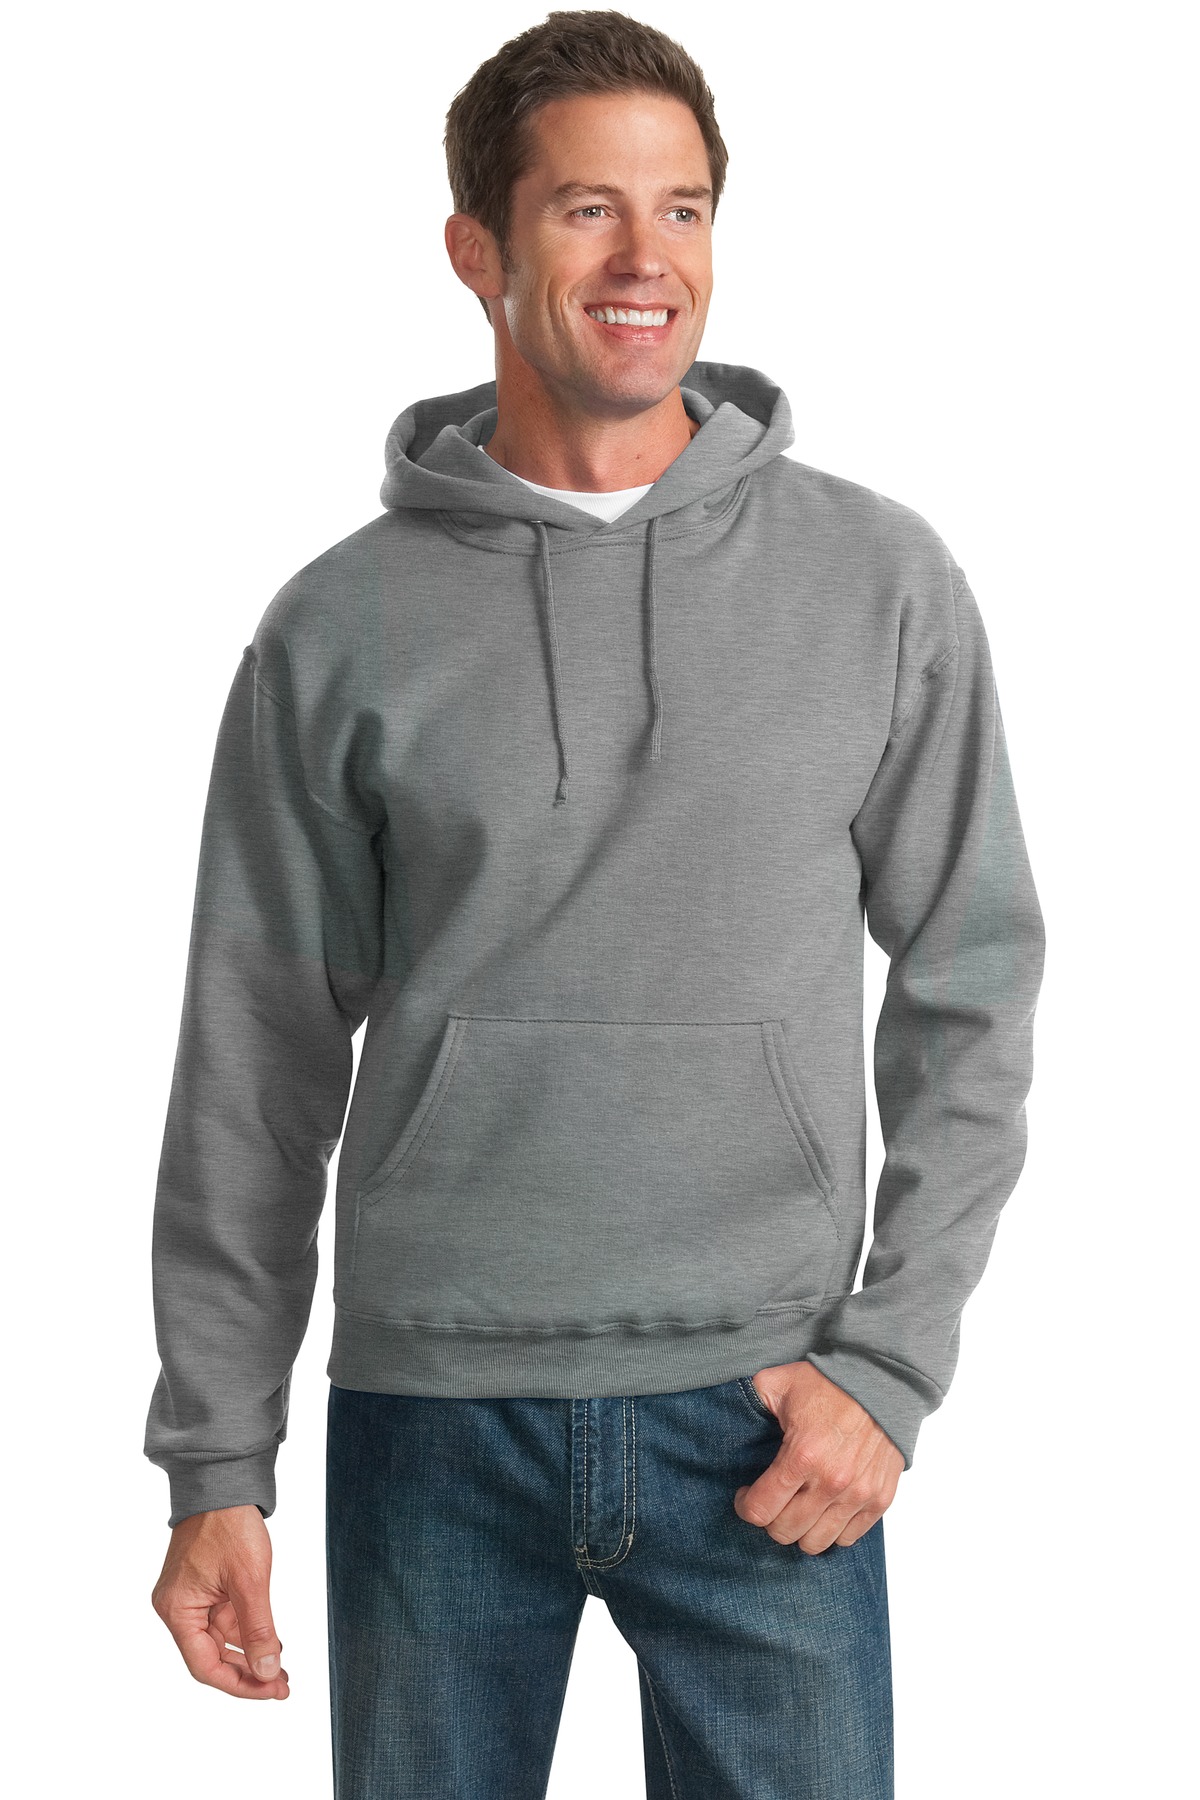 JERZEES - NuBlend Pullover Hooded Sweatshirt. 996M